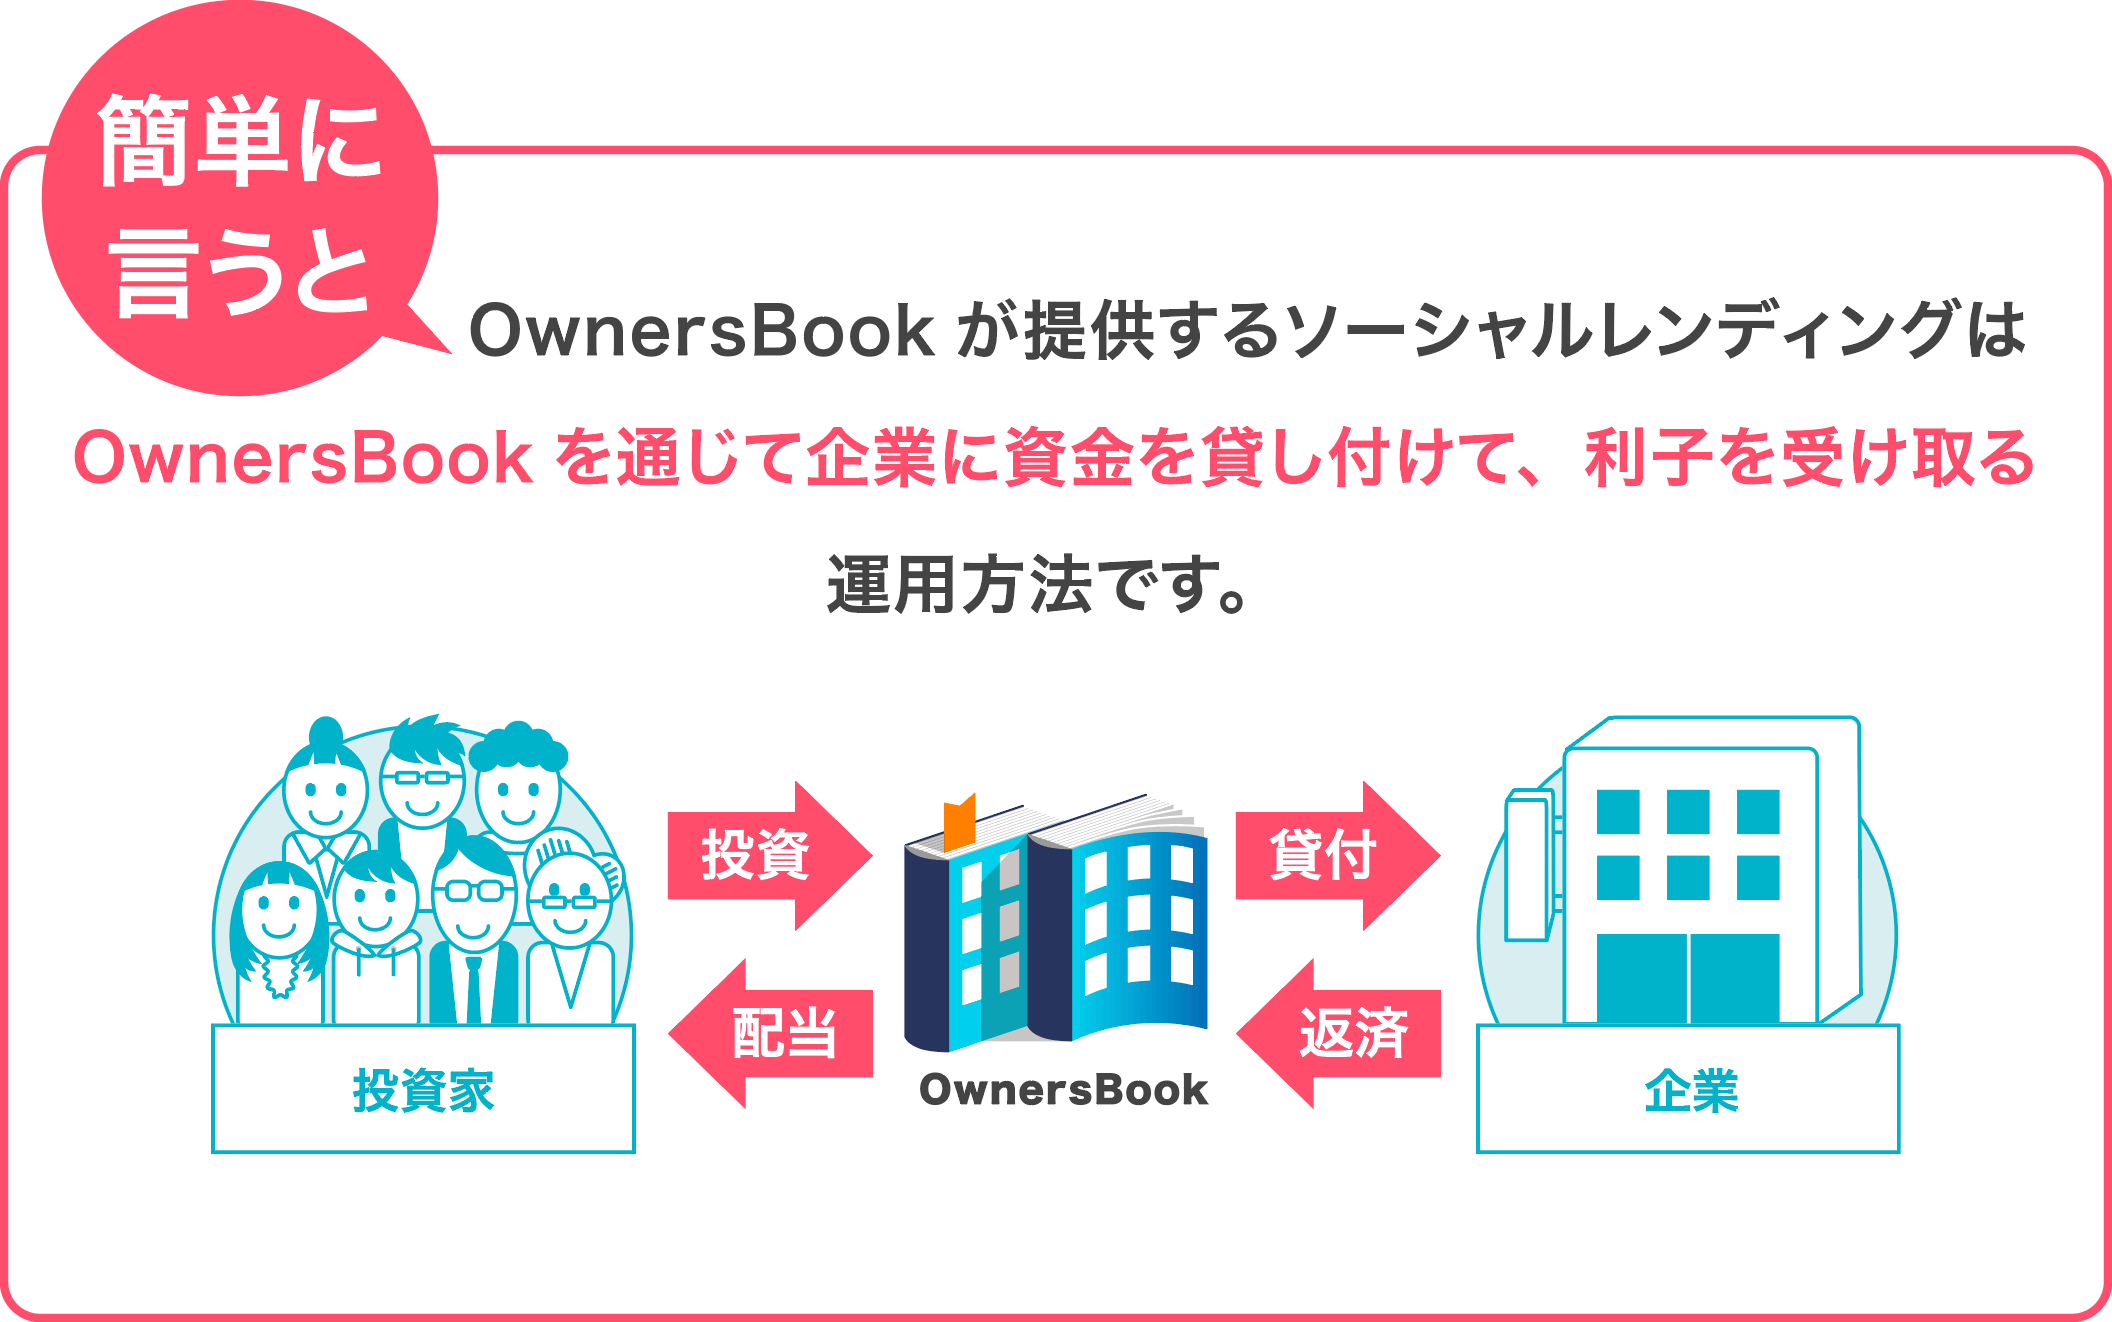 簡単に言うとOwnersBookが提供するシーシャルレンディングは、OwnersBookを通じて企業に資金を貸付て、利子を受け取る運用方法です。